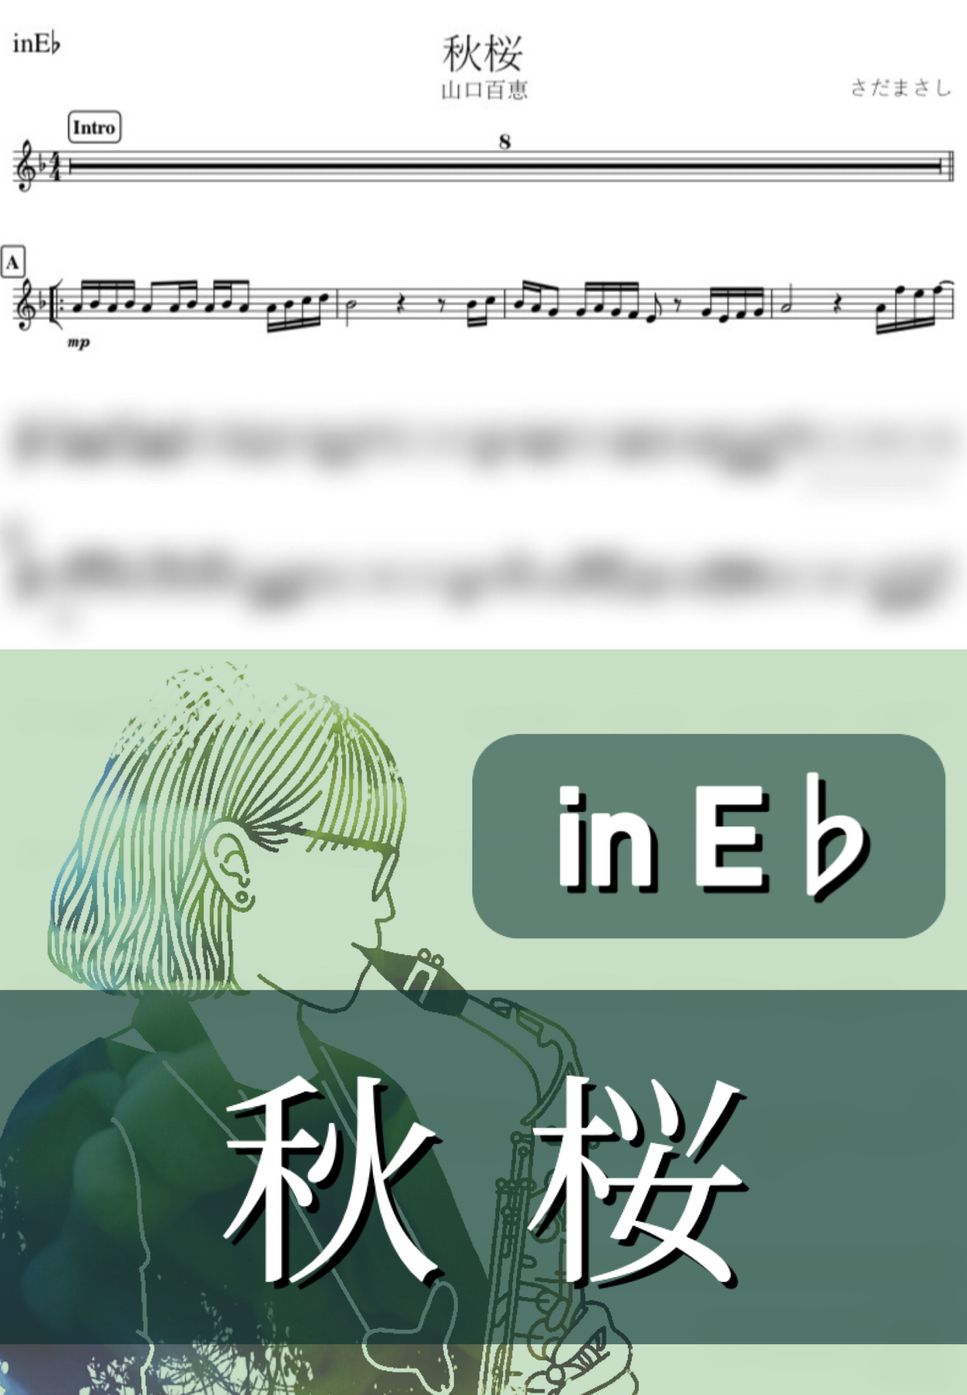 山口百恵 - 秋桜 (E♭) by kanamusic